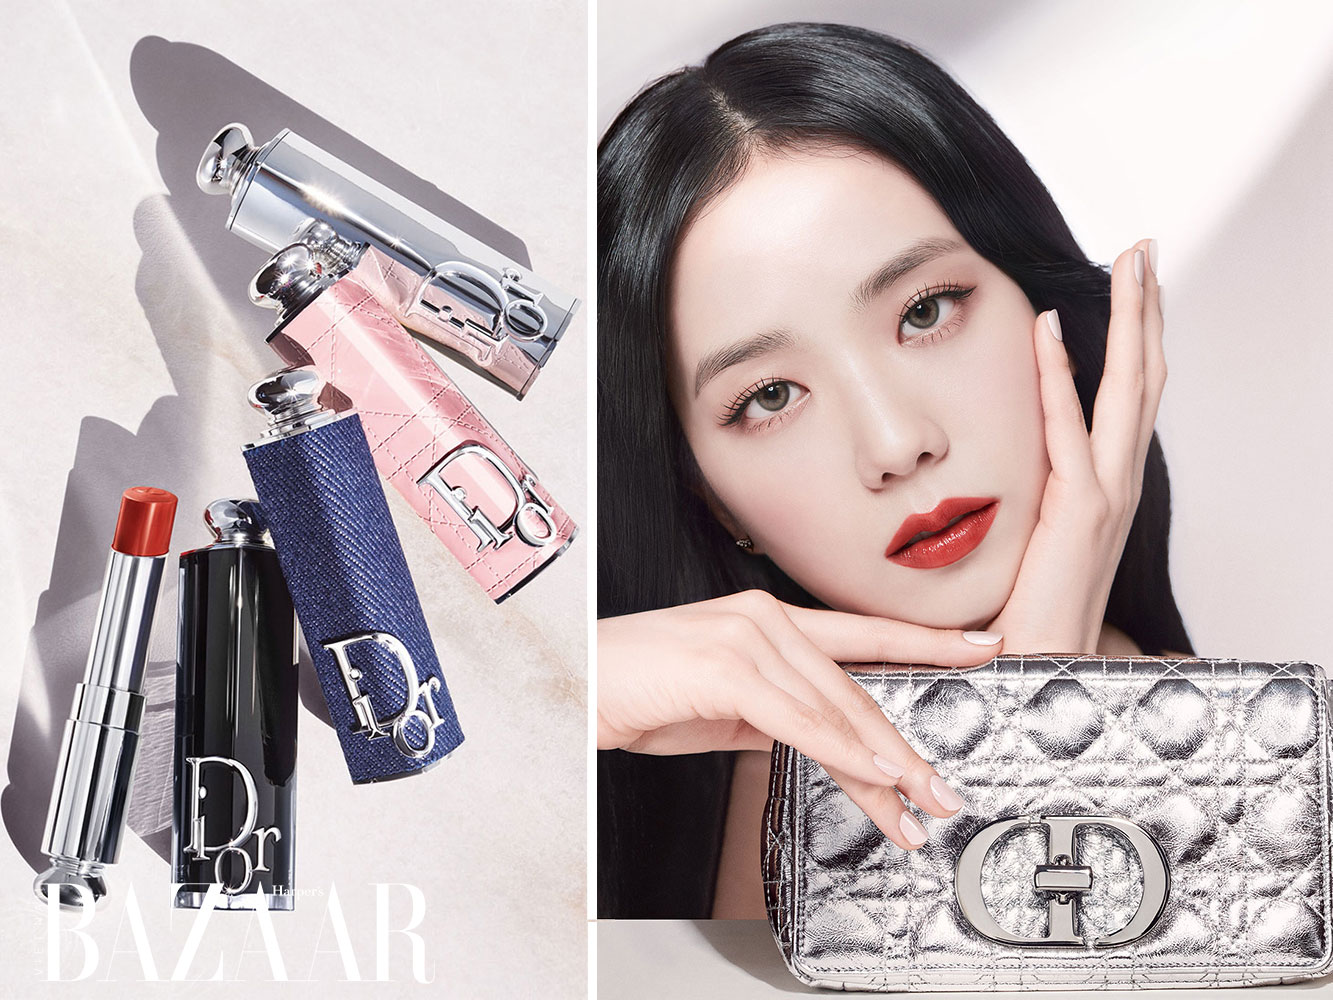 Thỏi son Dior Addict Lipstick chính thức đổ bộ vào Việt Nam làm nức lòng  nhiều tín đồ